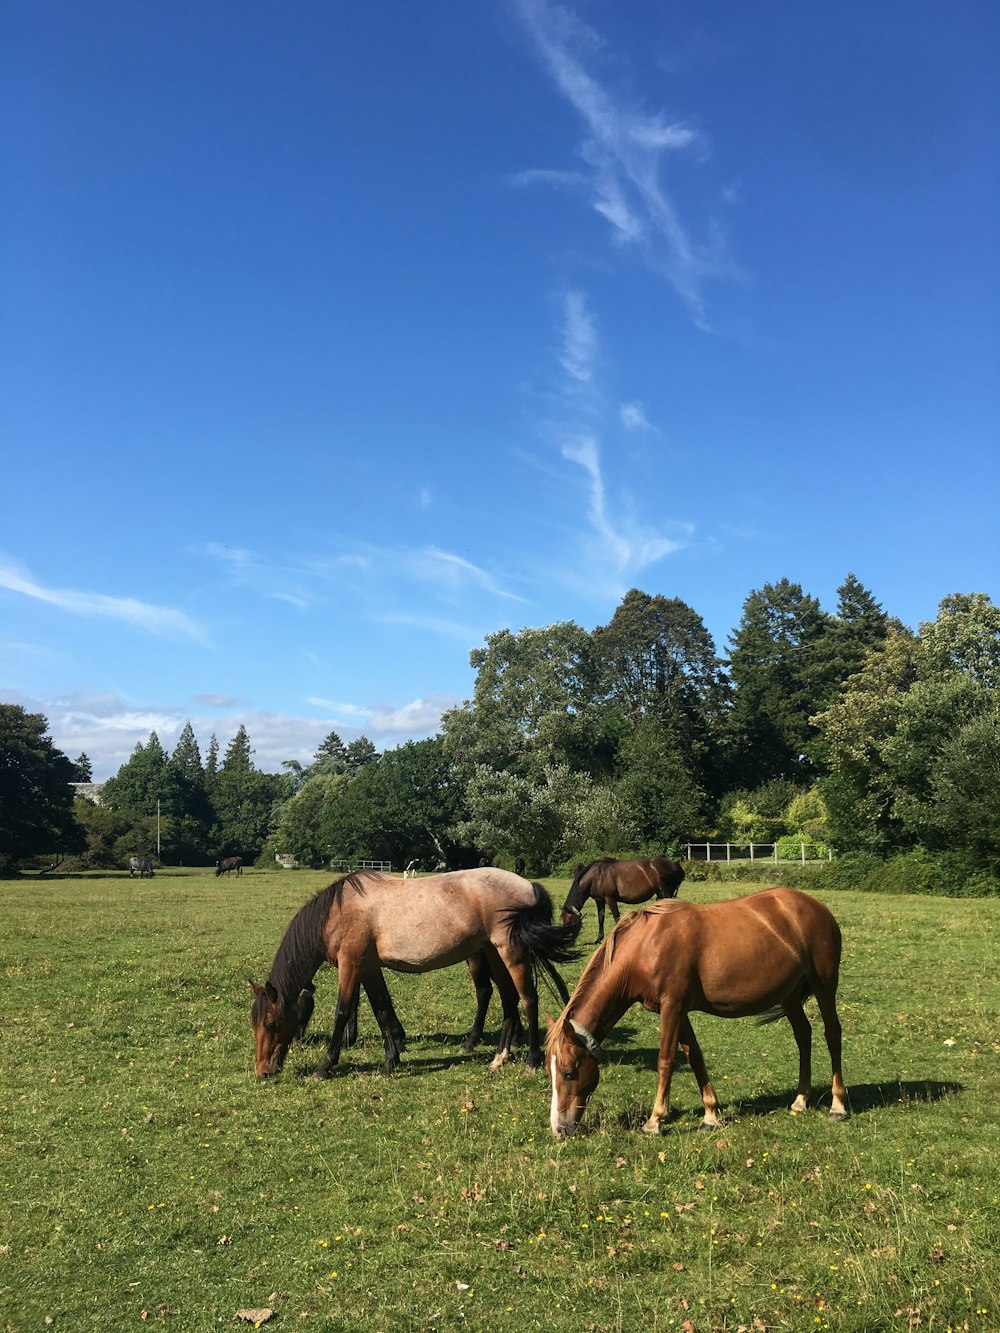 chevaux bruns sur le champ d’herbe verte sous le ciel bleu pendant la journée